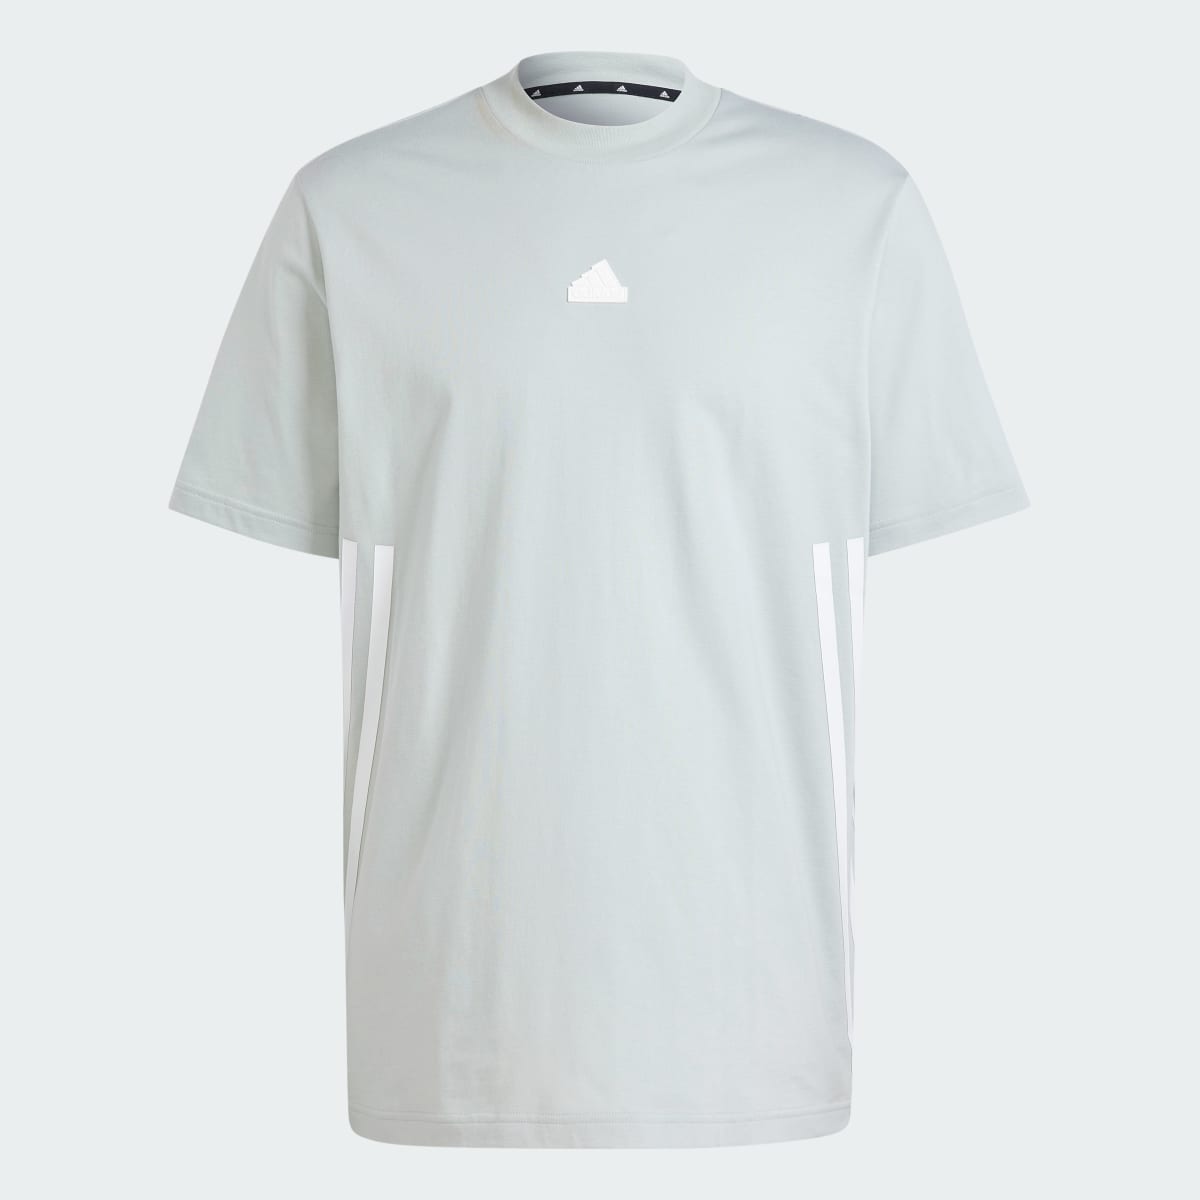 Adidas Future Icons 3-Stripes T-Shirt. 5